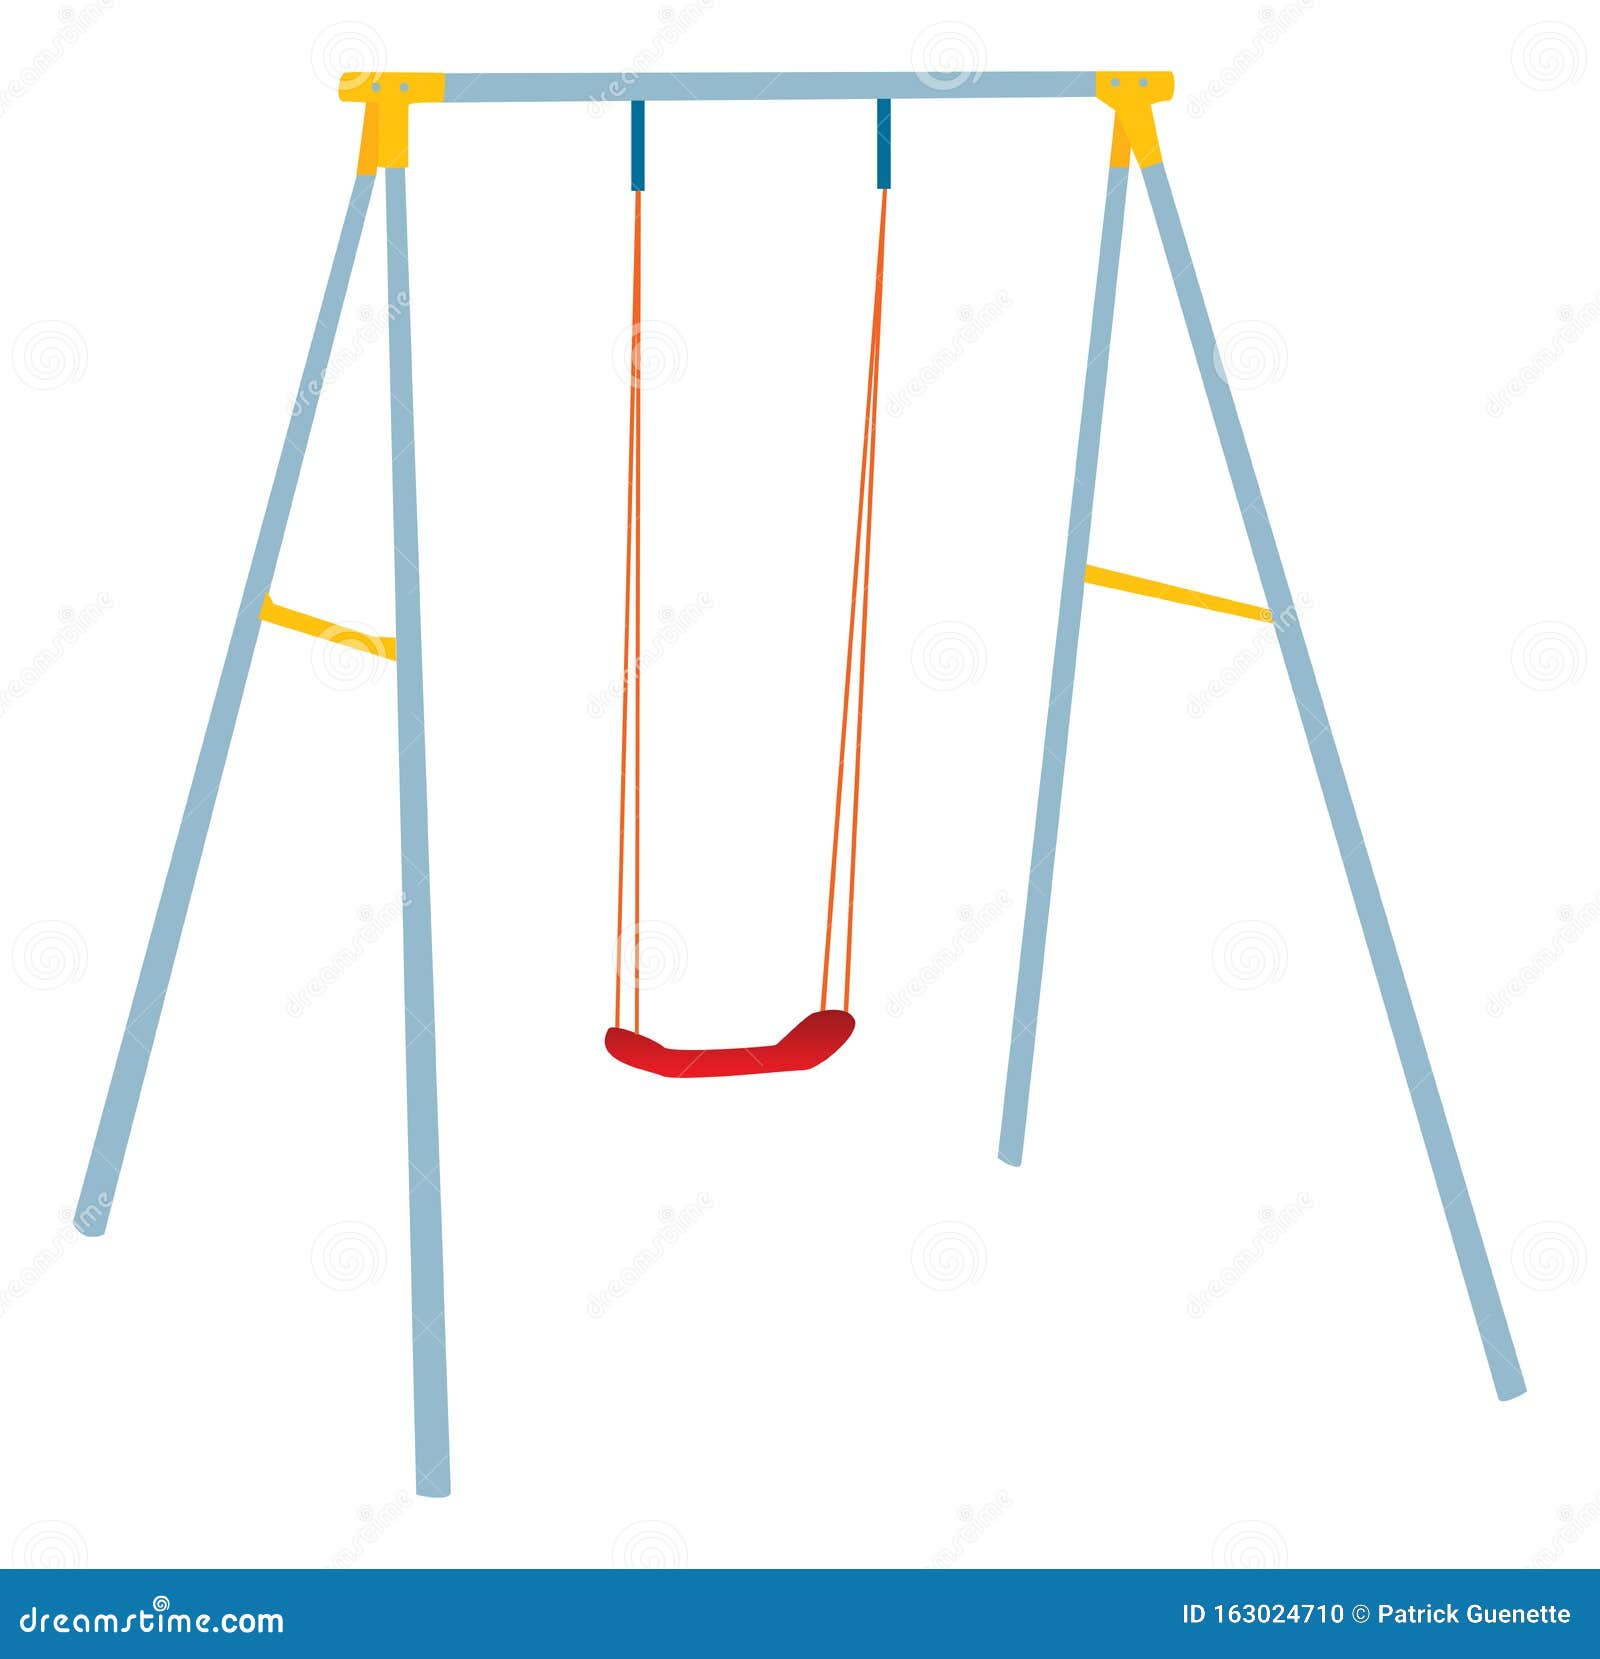 preschool swing set